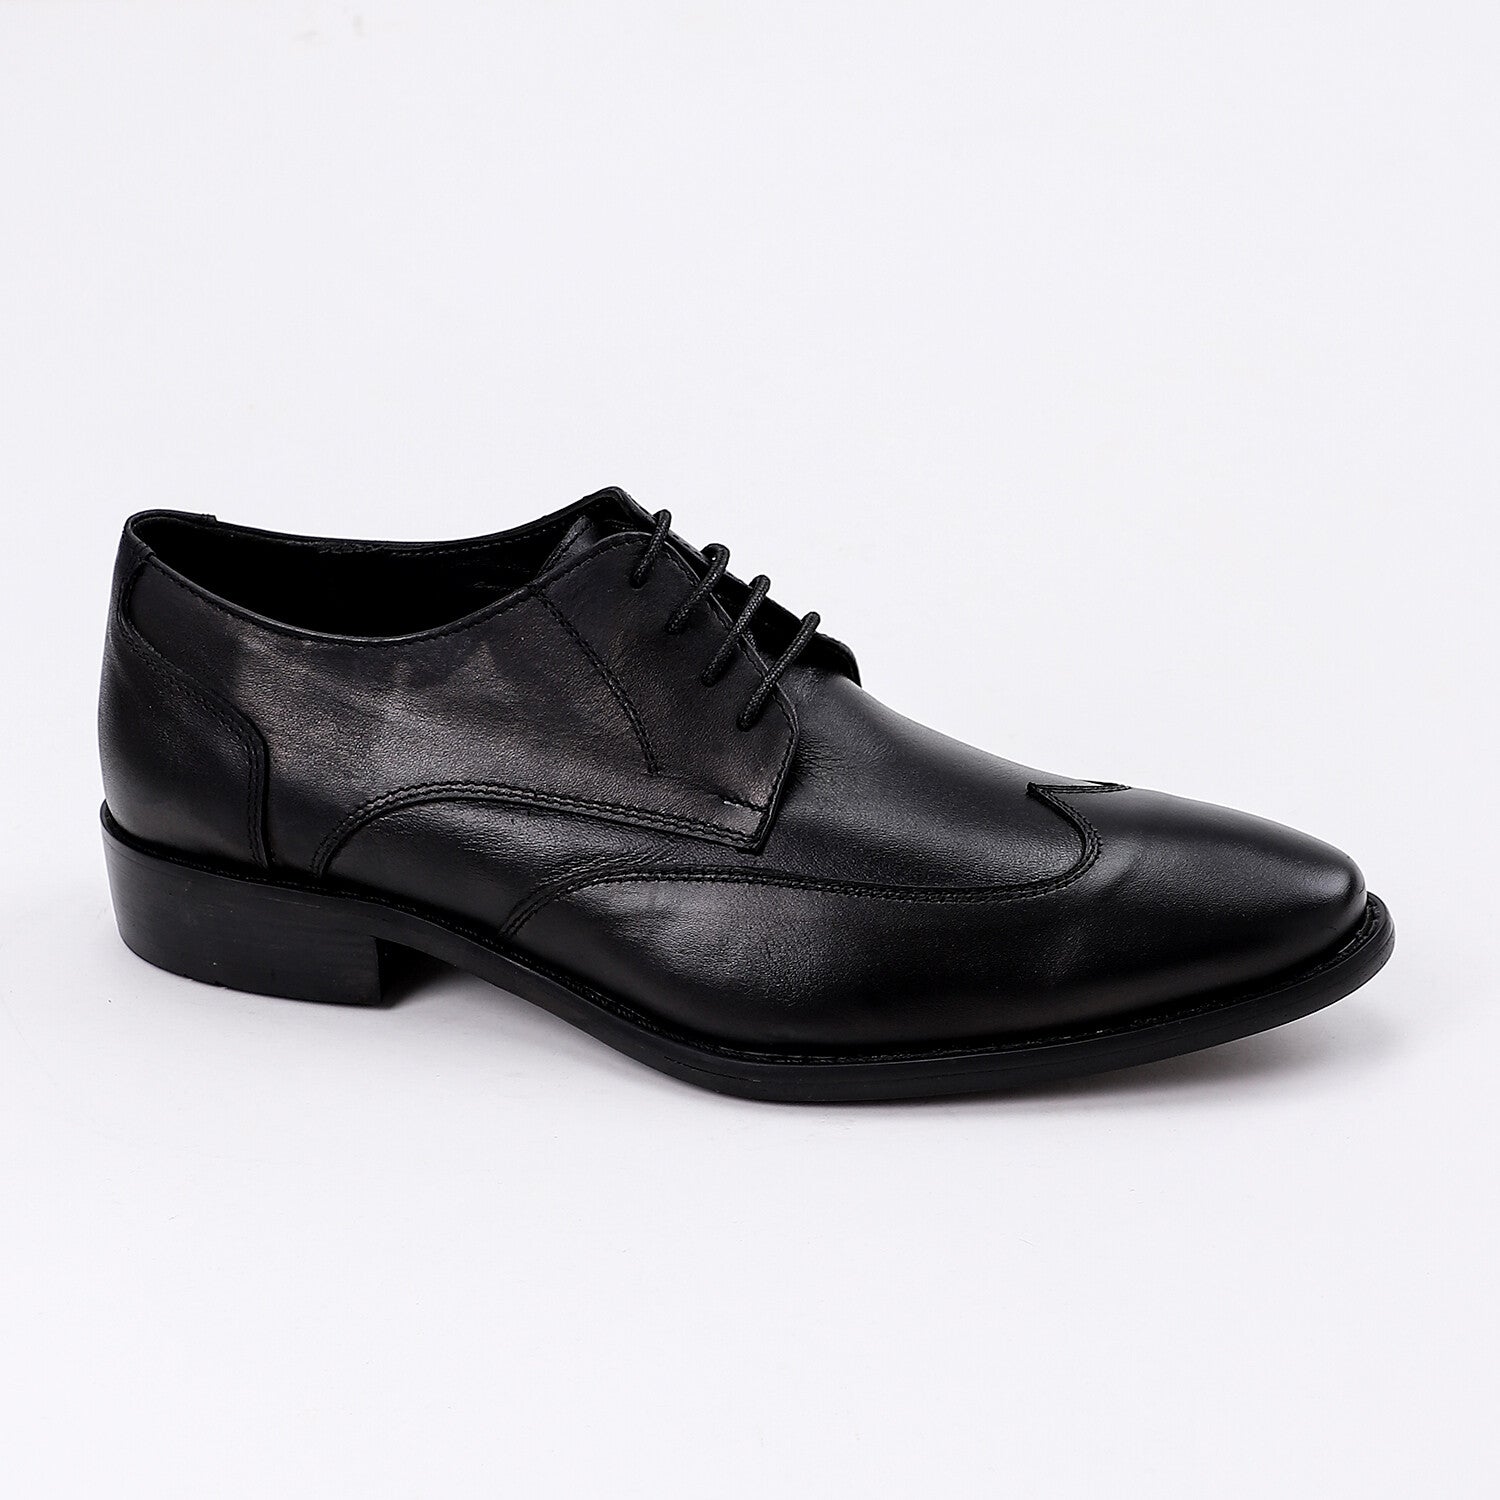 Mr Joe shoes 3498